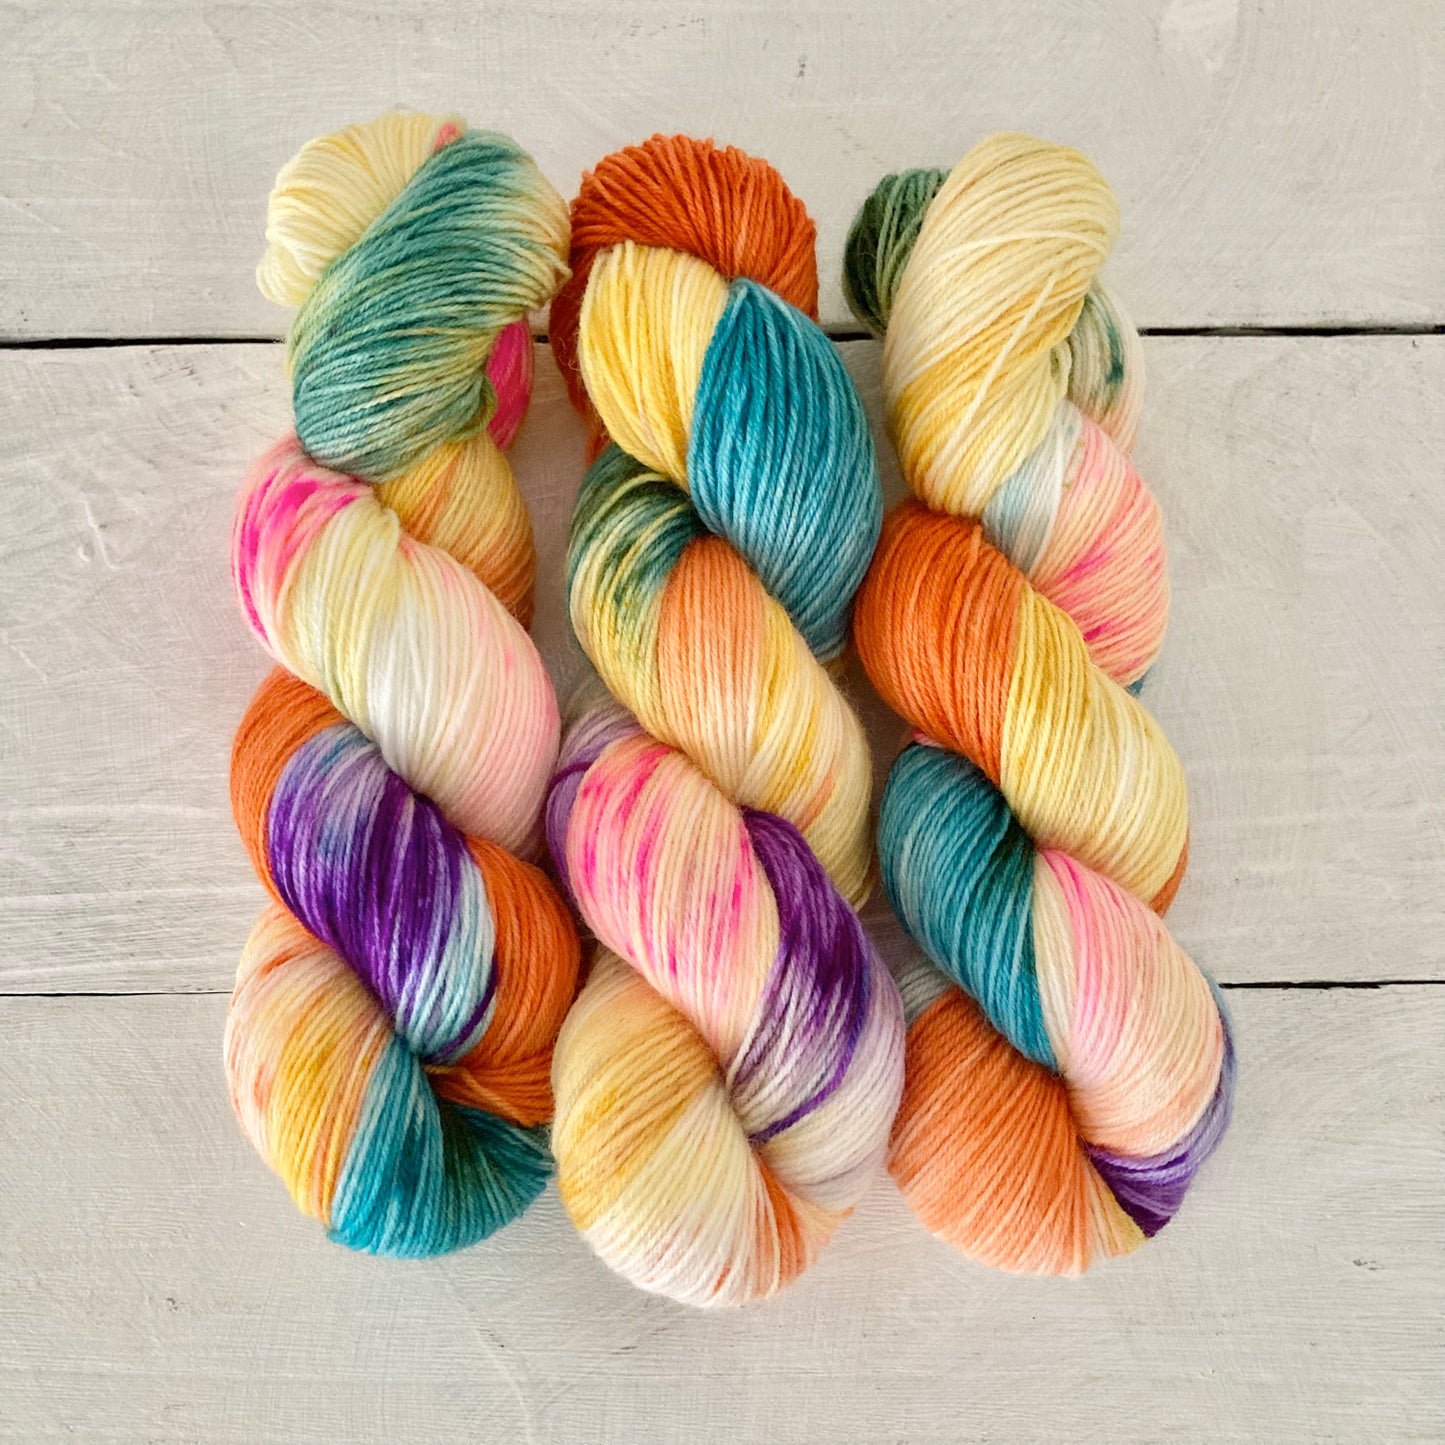 Hand-dyed yarn No.36 sock yarn "An die Freude"